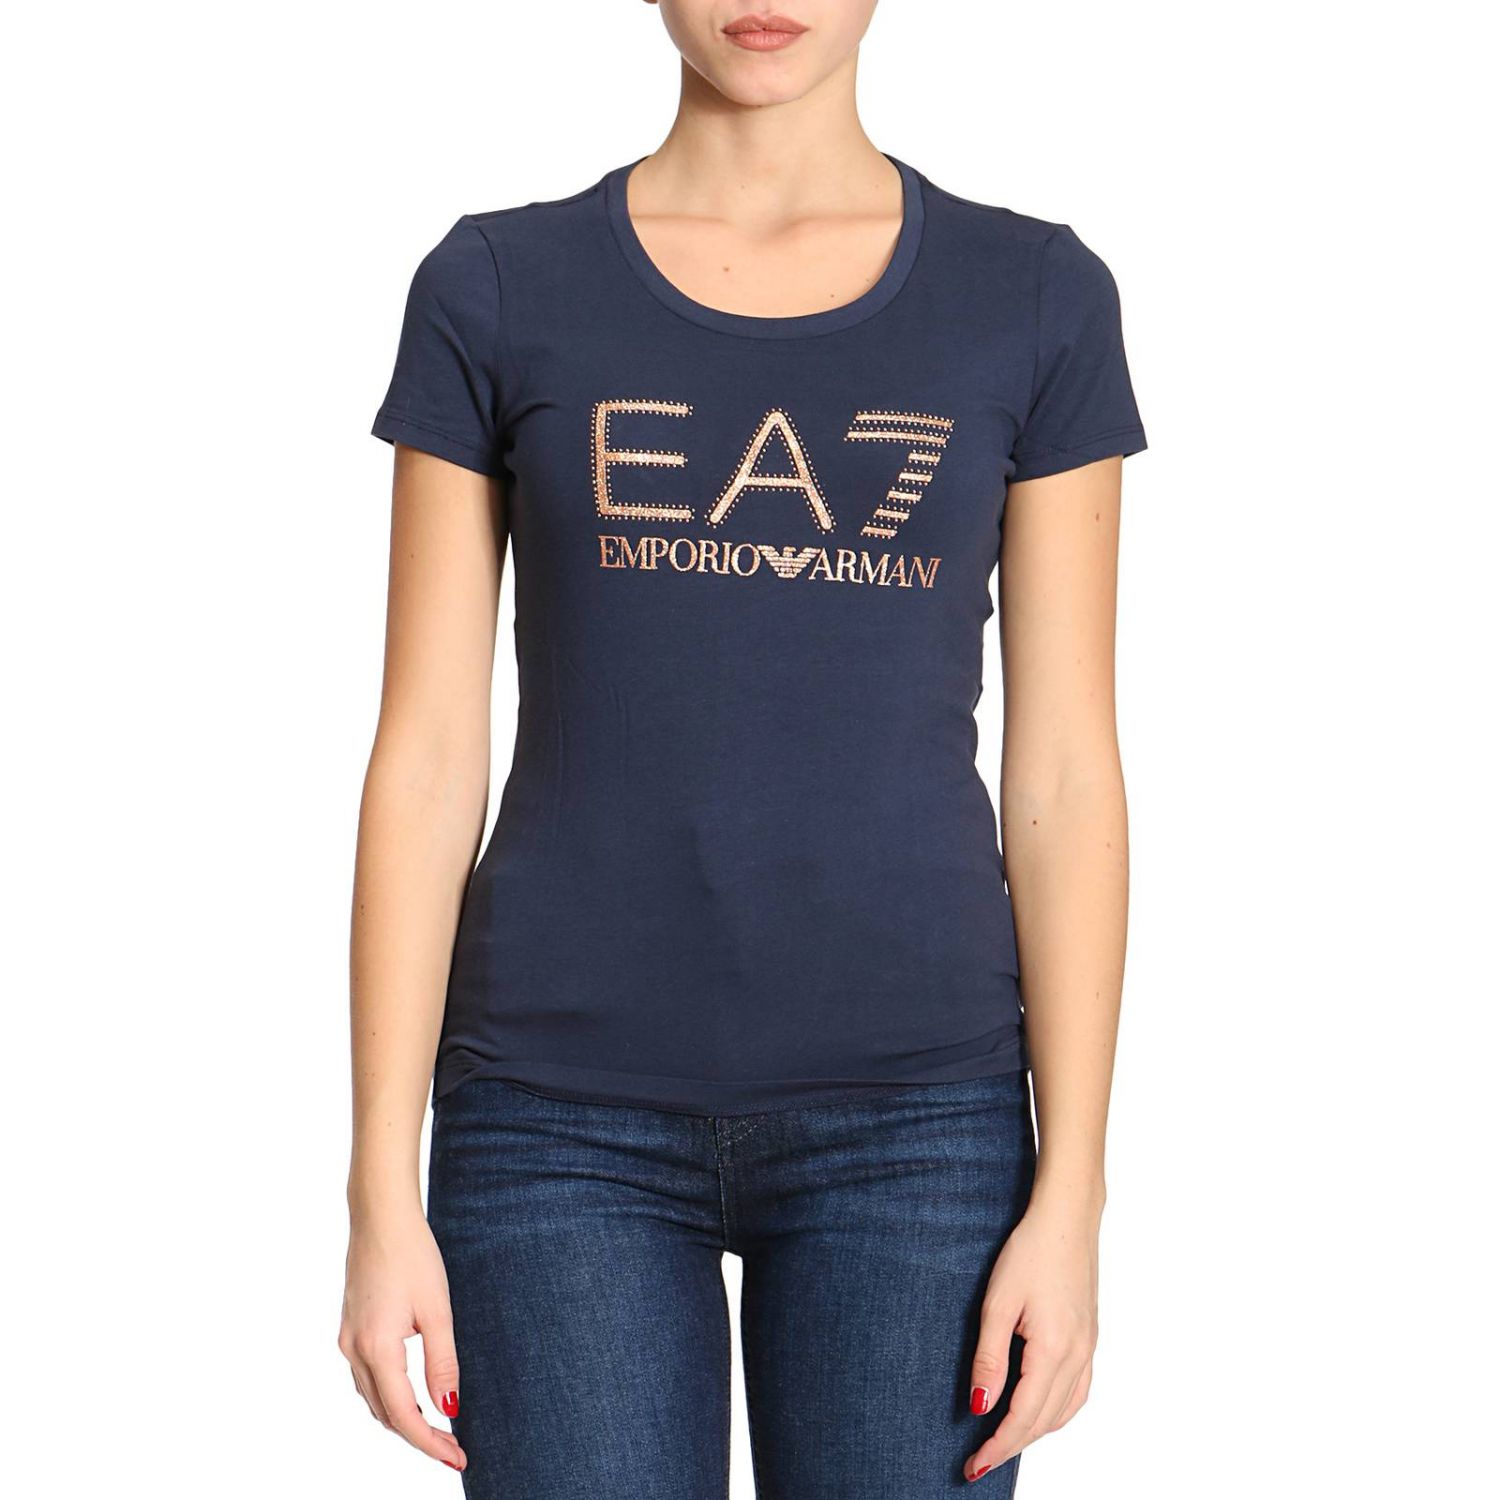 ea7 t shirt womens